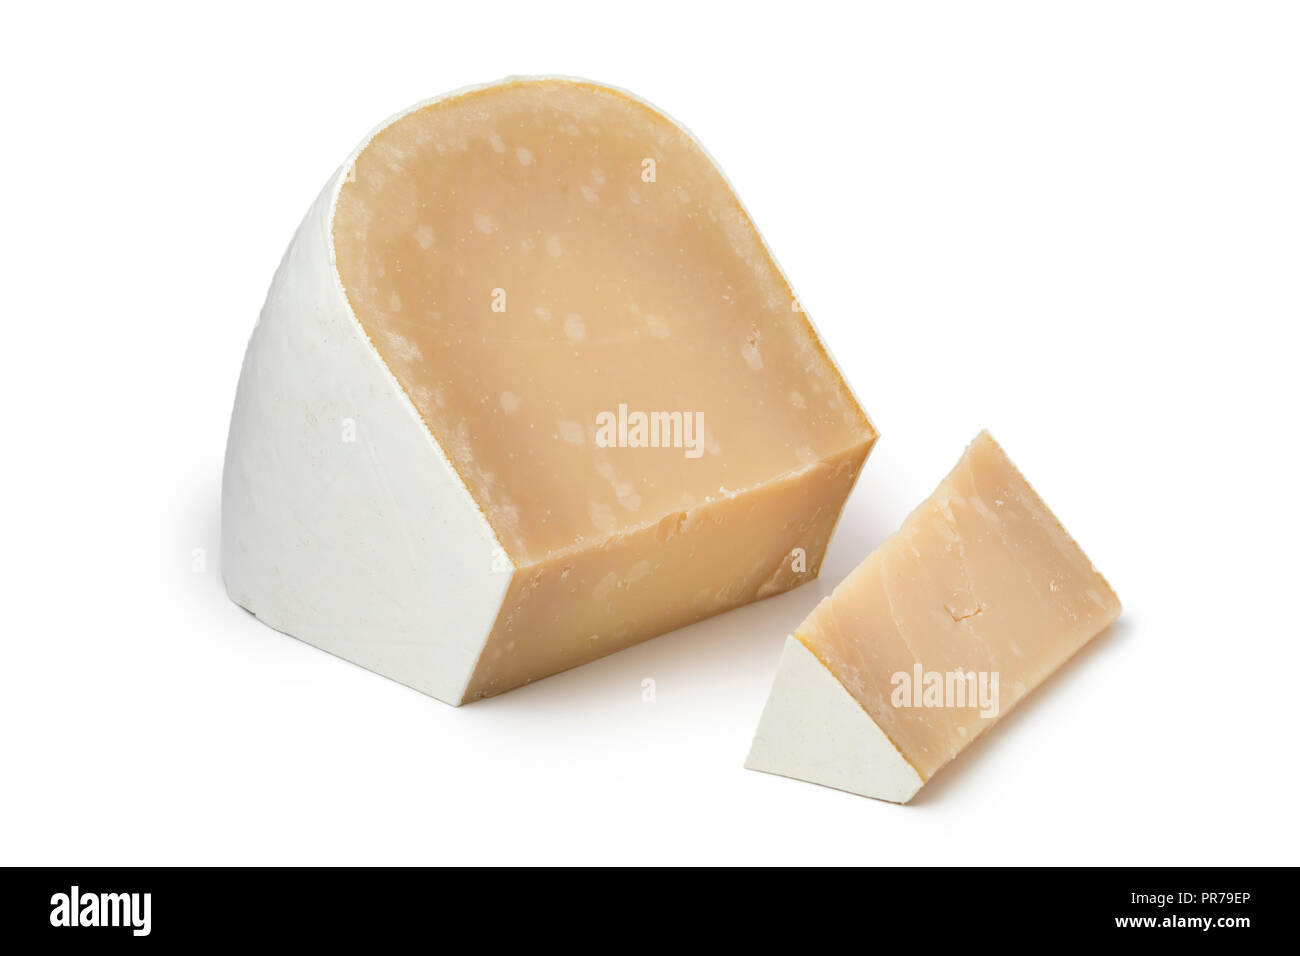 Vieux morceau de fromage de chèvre bio blanc à maturité et un morceau isolé sur fond blanc Banque D'Images